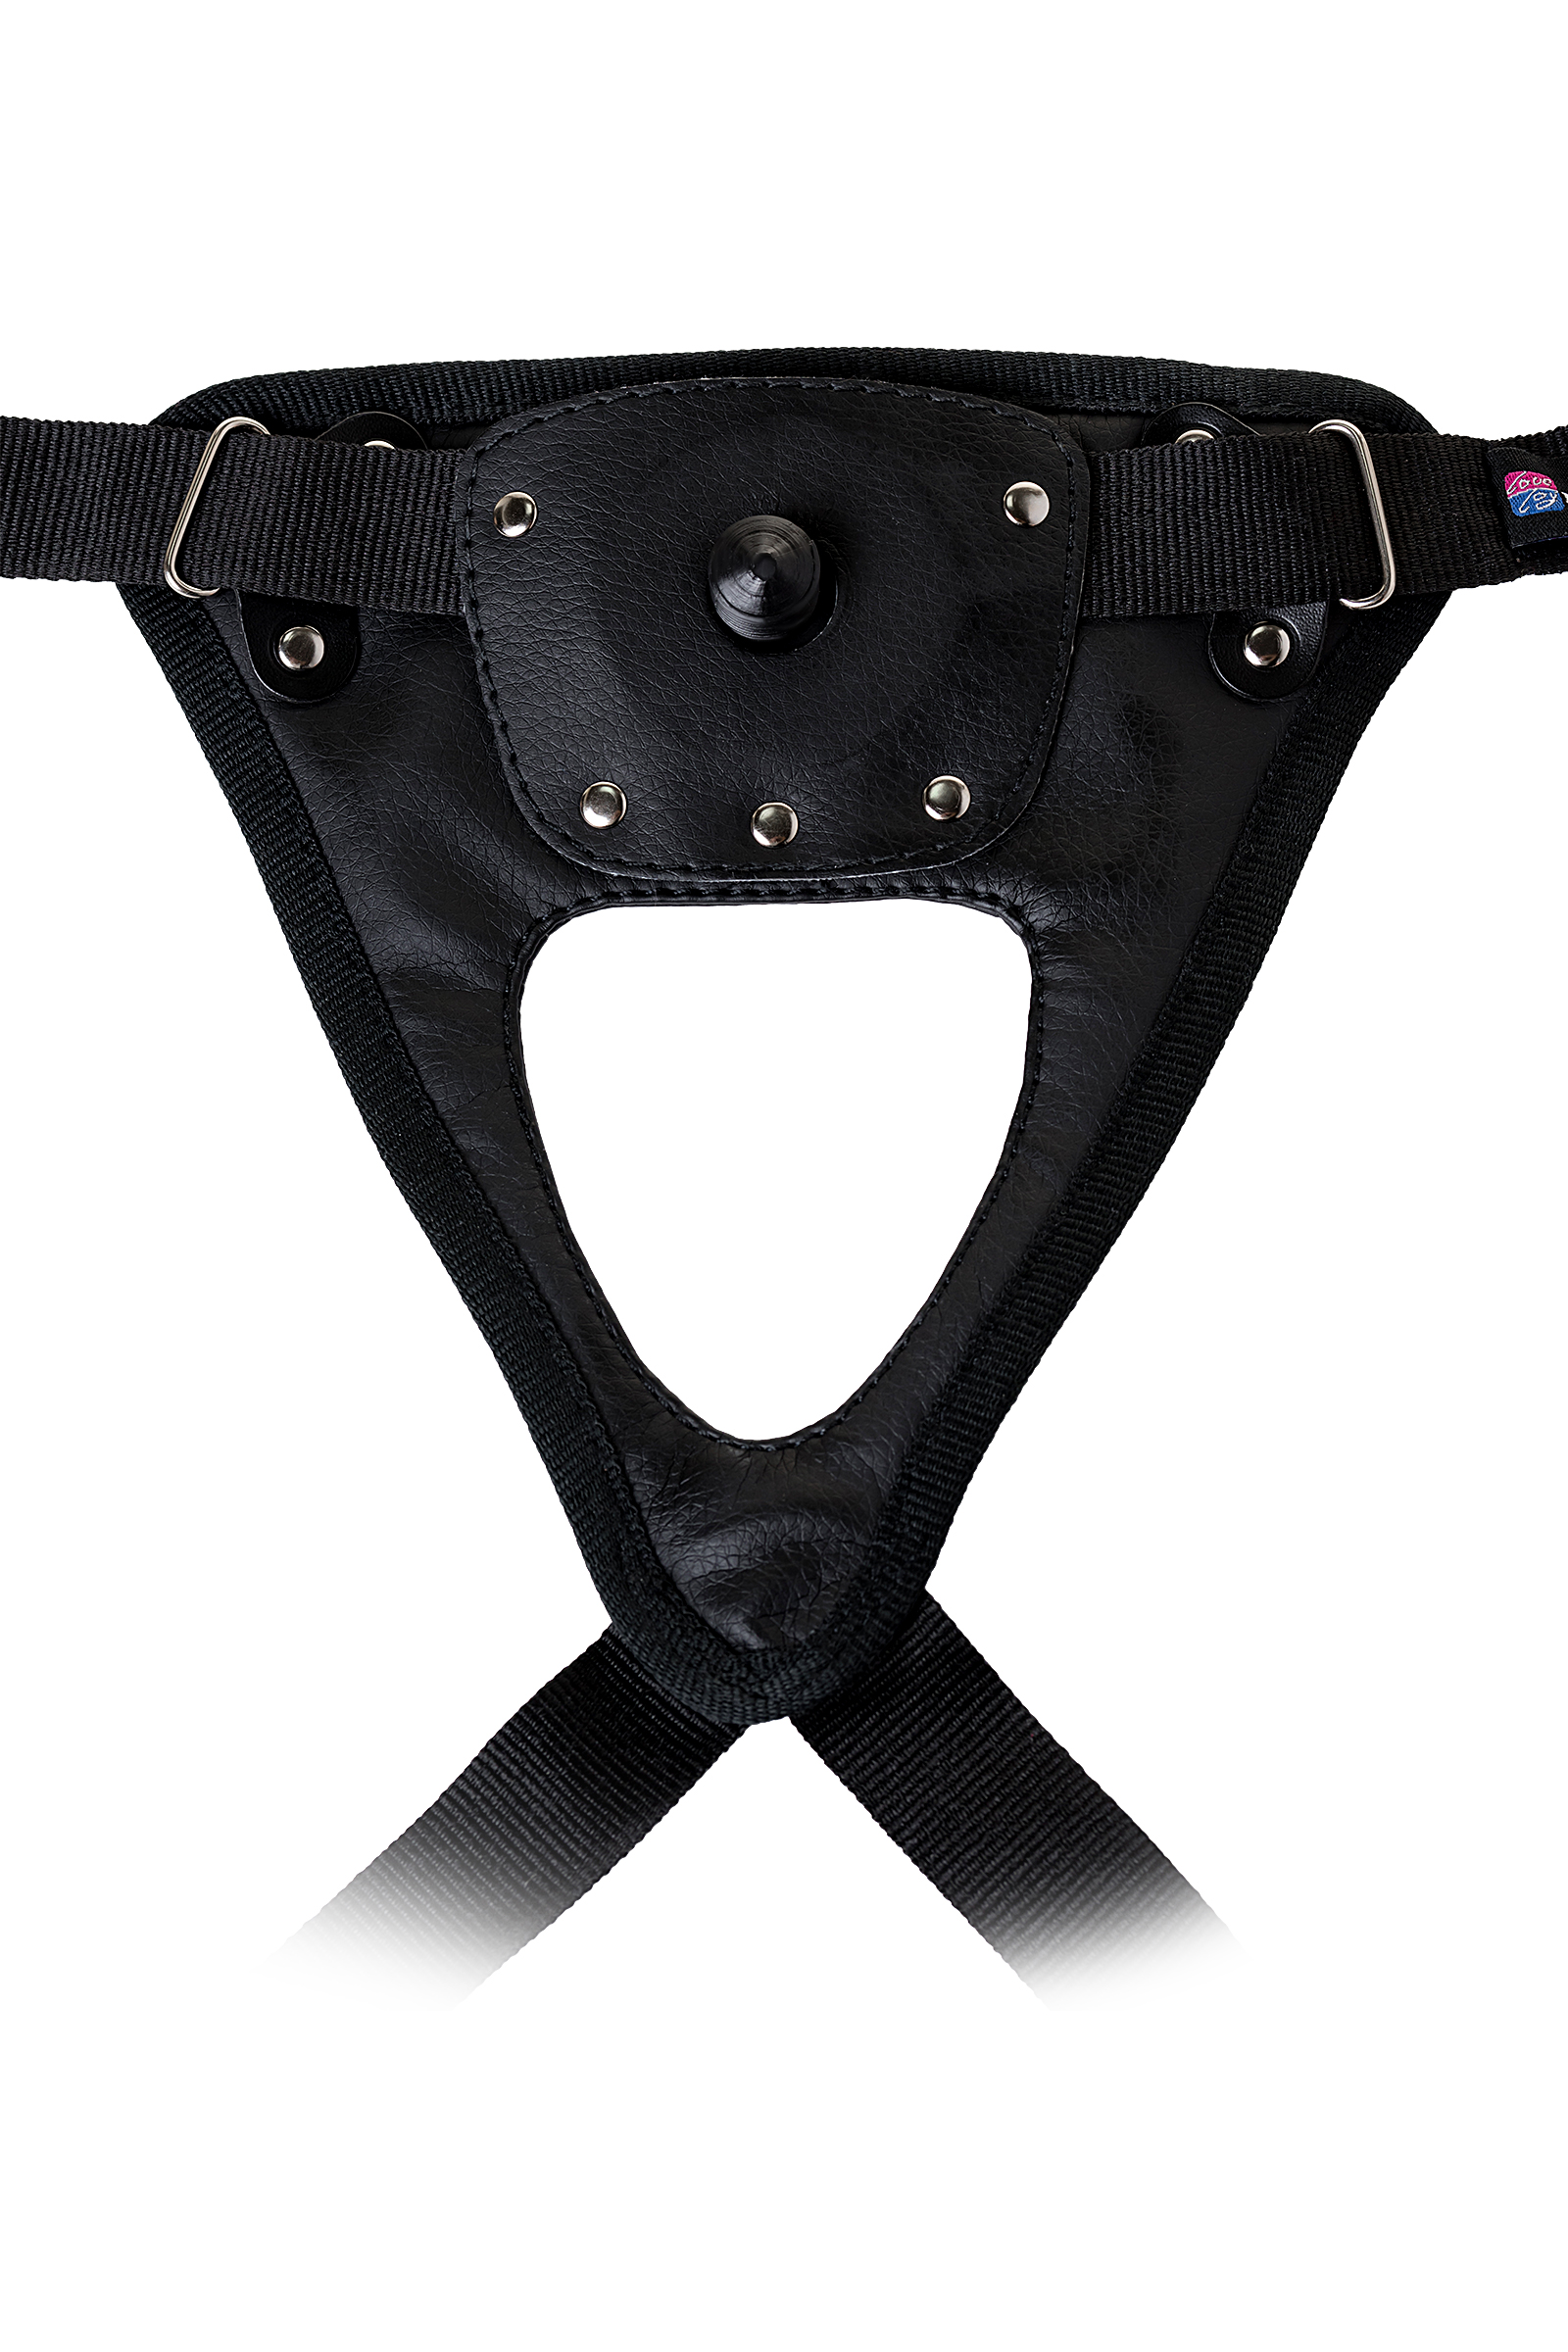 Страпон на креплении LoveToy с поясом Harness, реалистичный, neoskin, телесный, 21 см. Фото N6